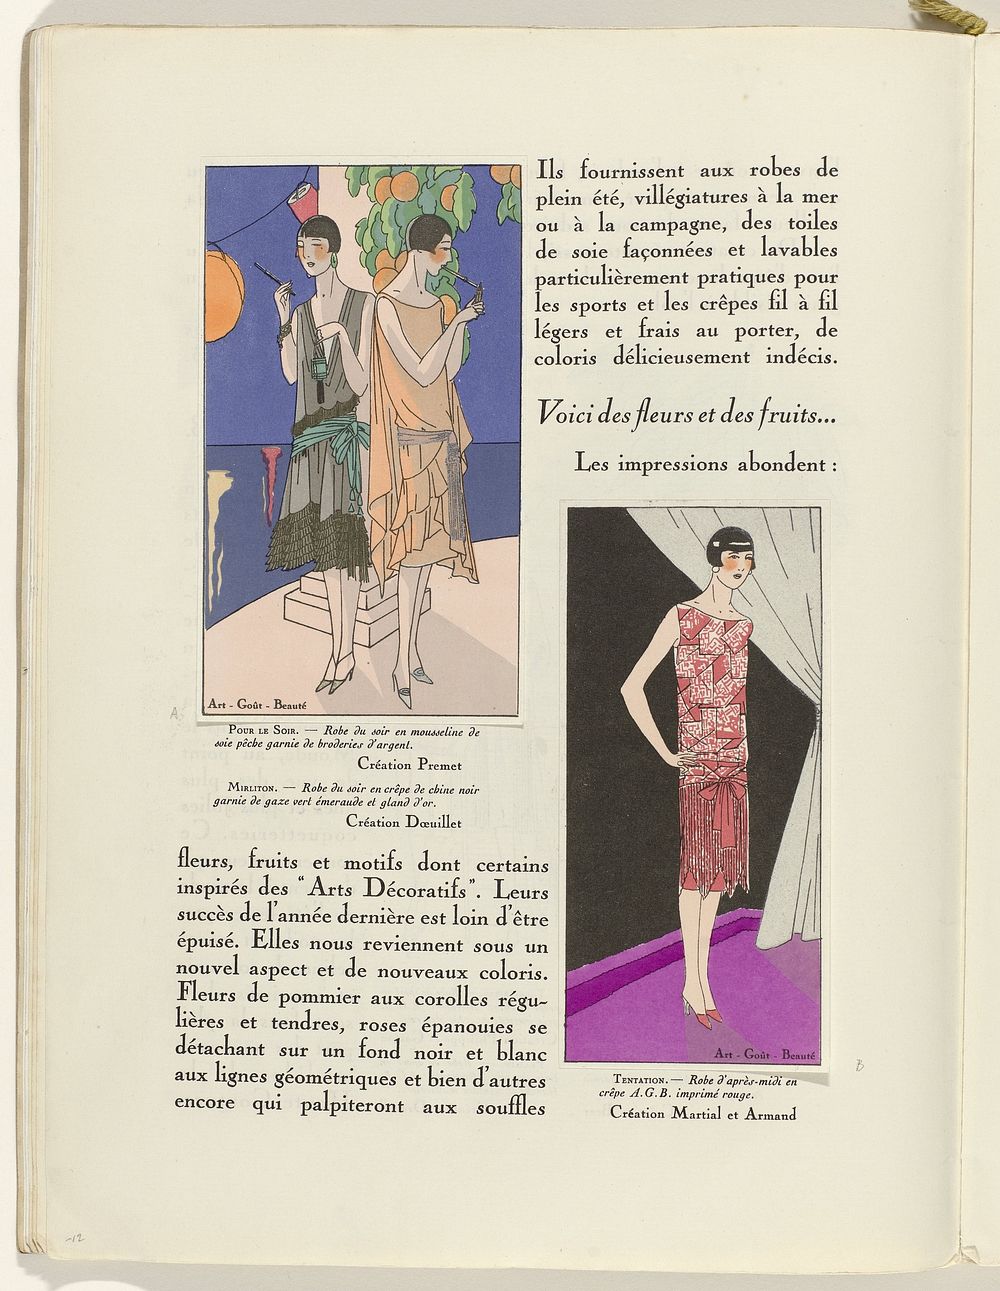 Art - Goût - Beauté, Feuillets de l' élégance féminine, Février 1926, No. 66, 6e Année, p. 12 (1926) by Charles Goy, Premet…